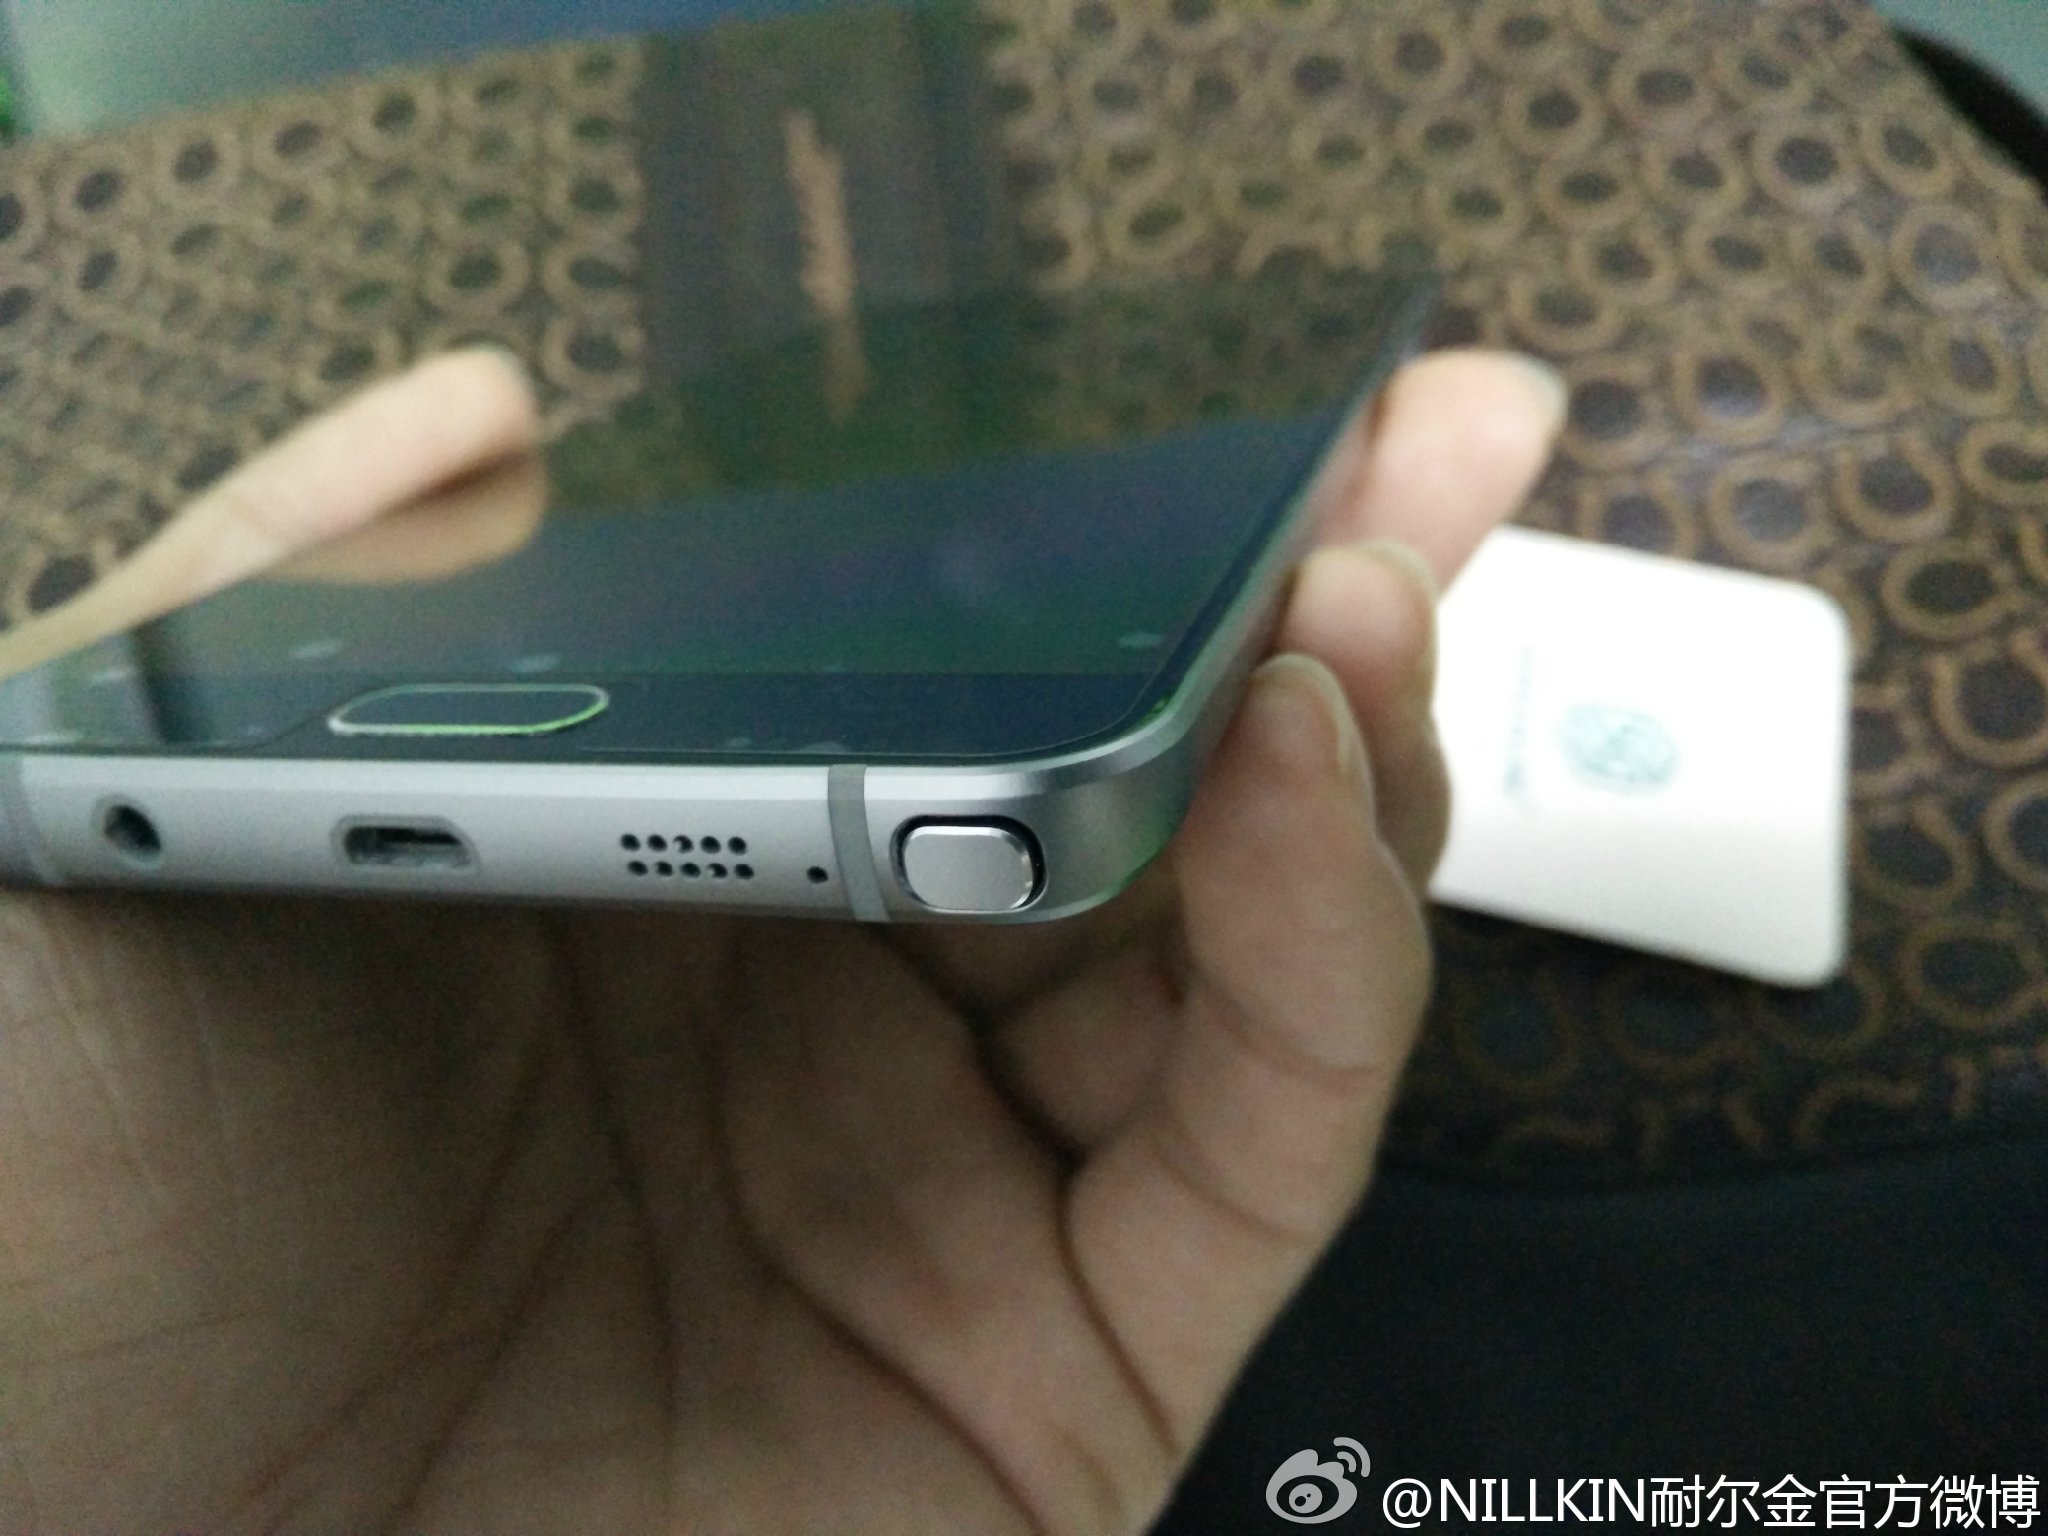 Samsung-Galaxy-Note-5-foto-leaked-4.jpg